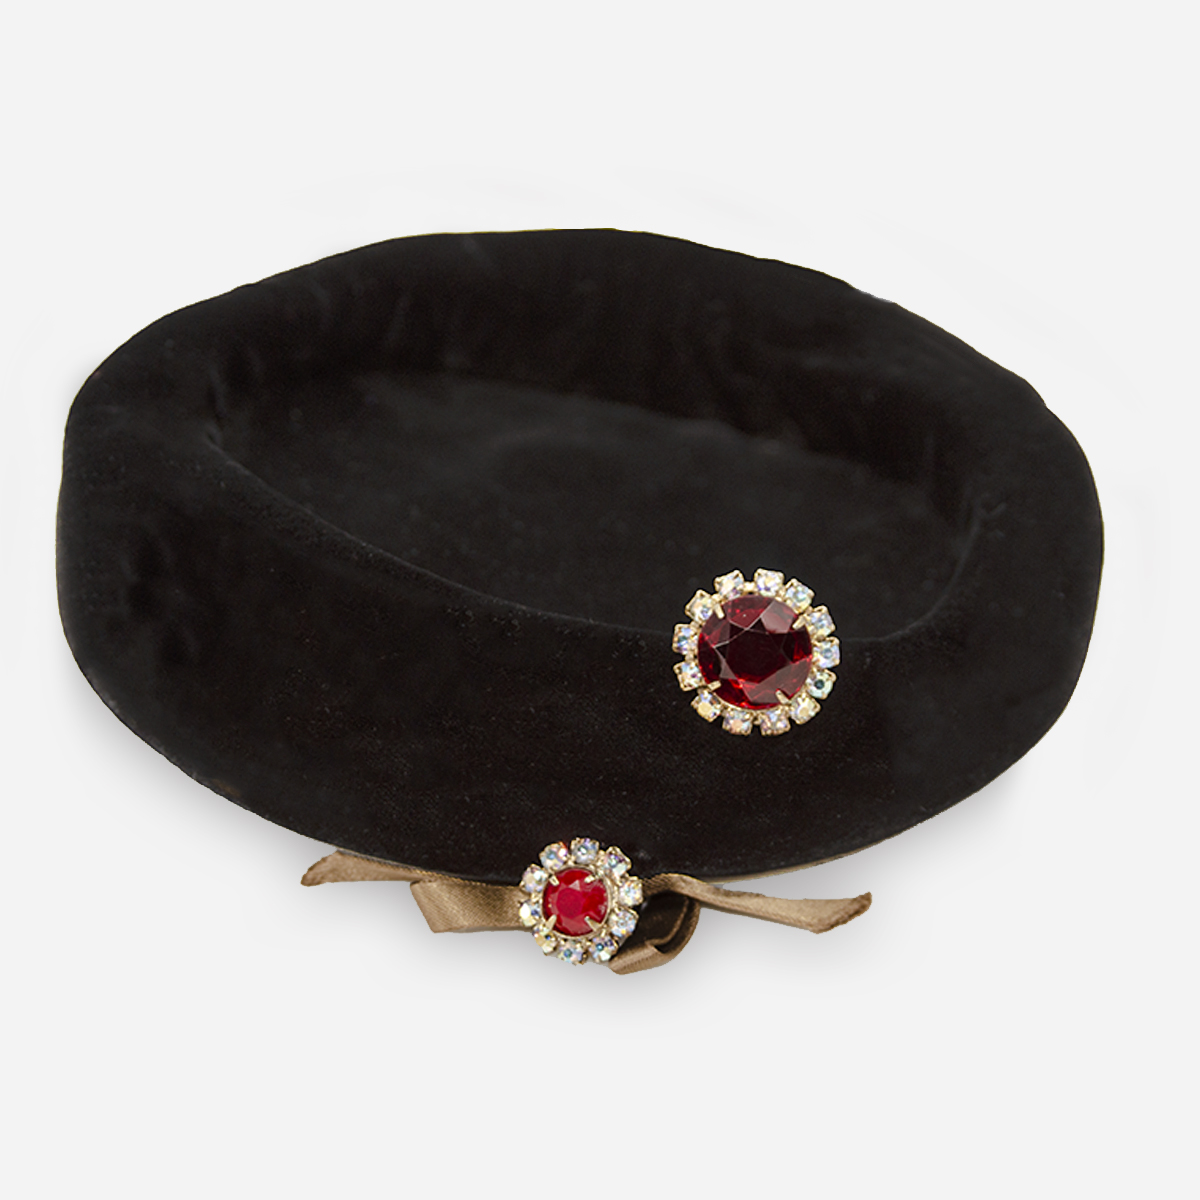 Black velvet pillbox hat